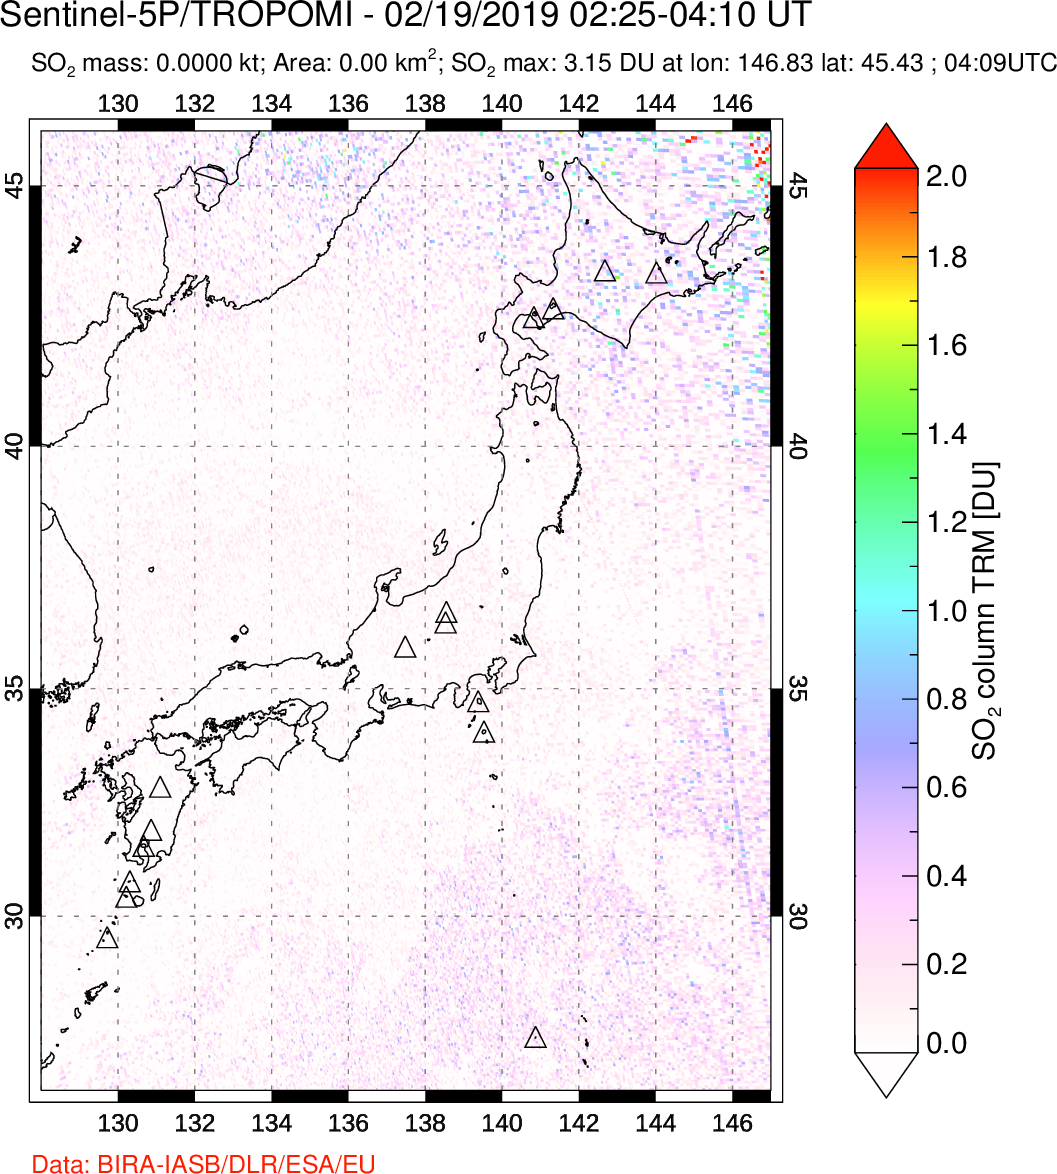 A sulfur dioxide image over Japan on Feb 19, 2019.